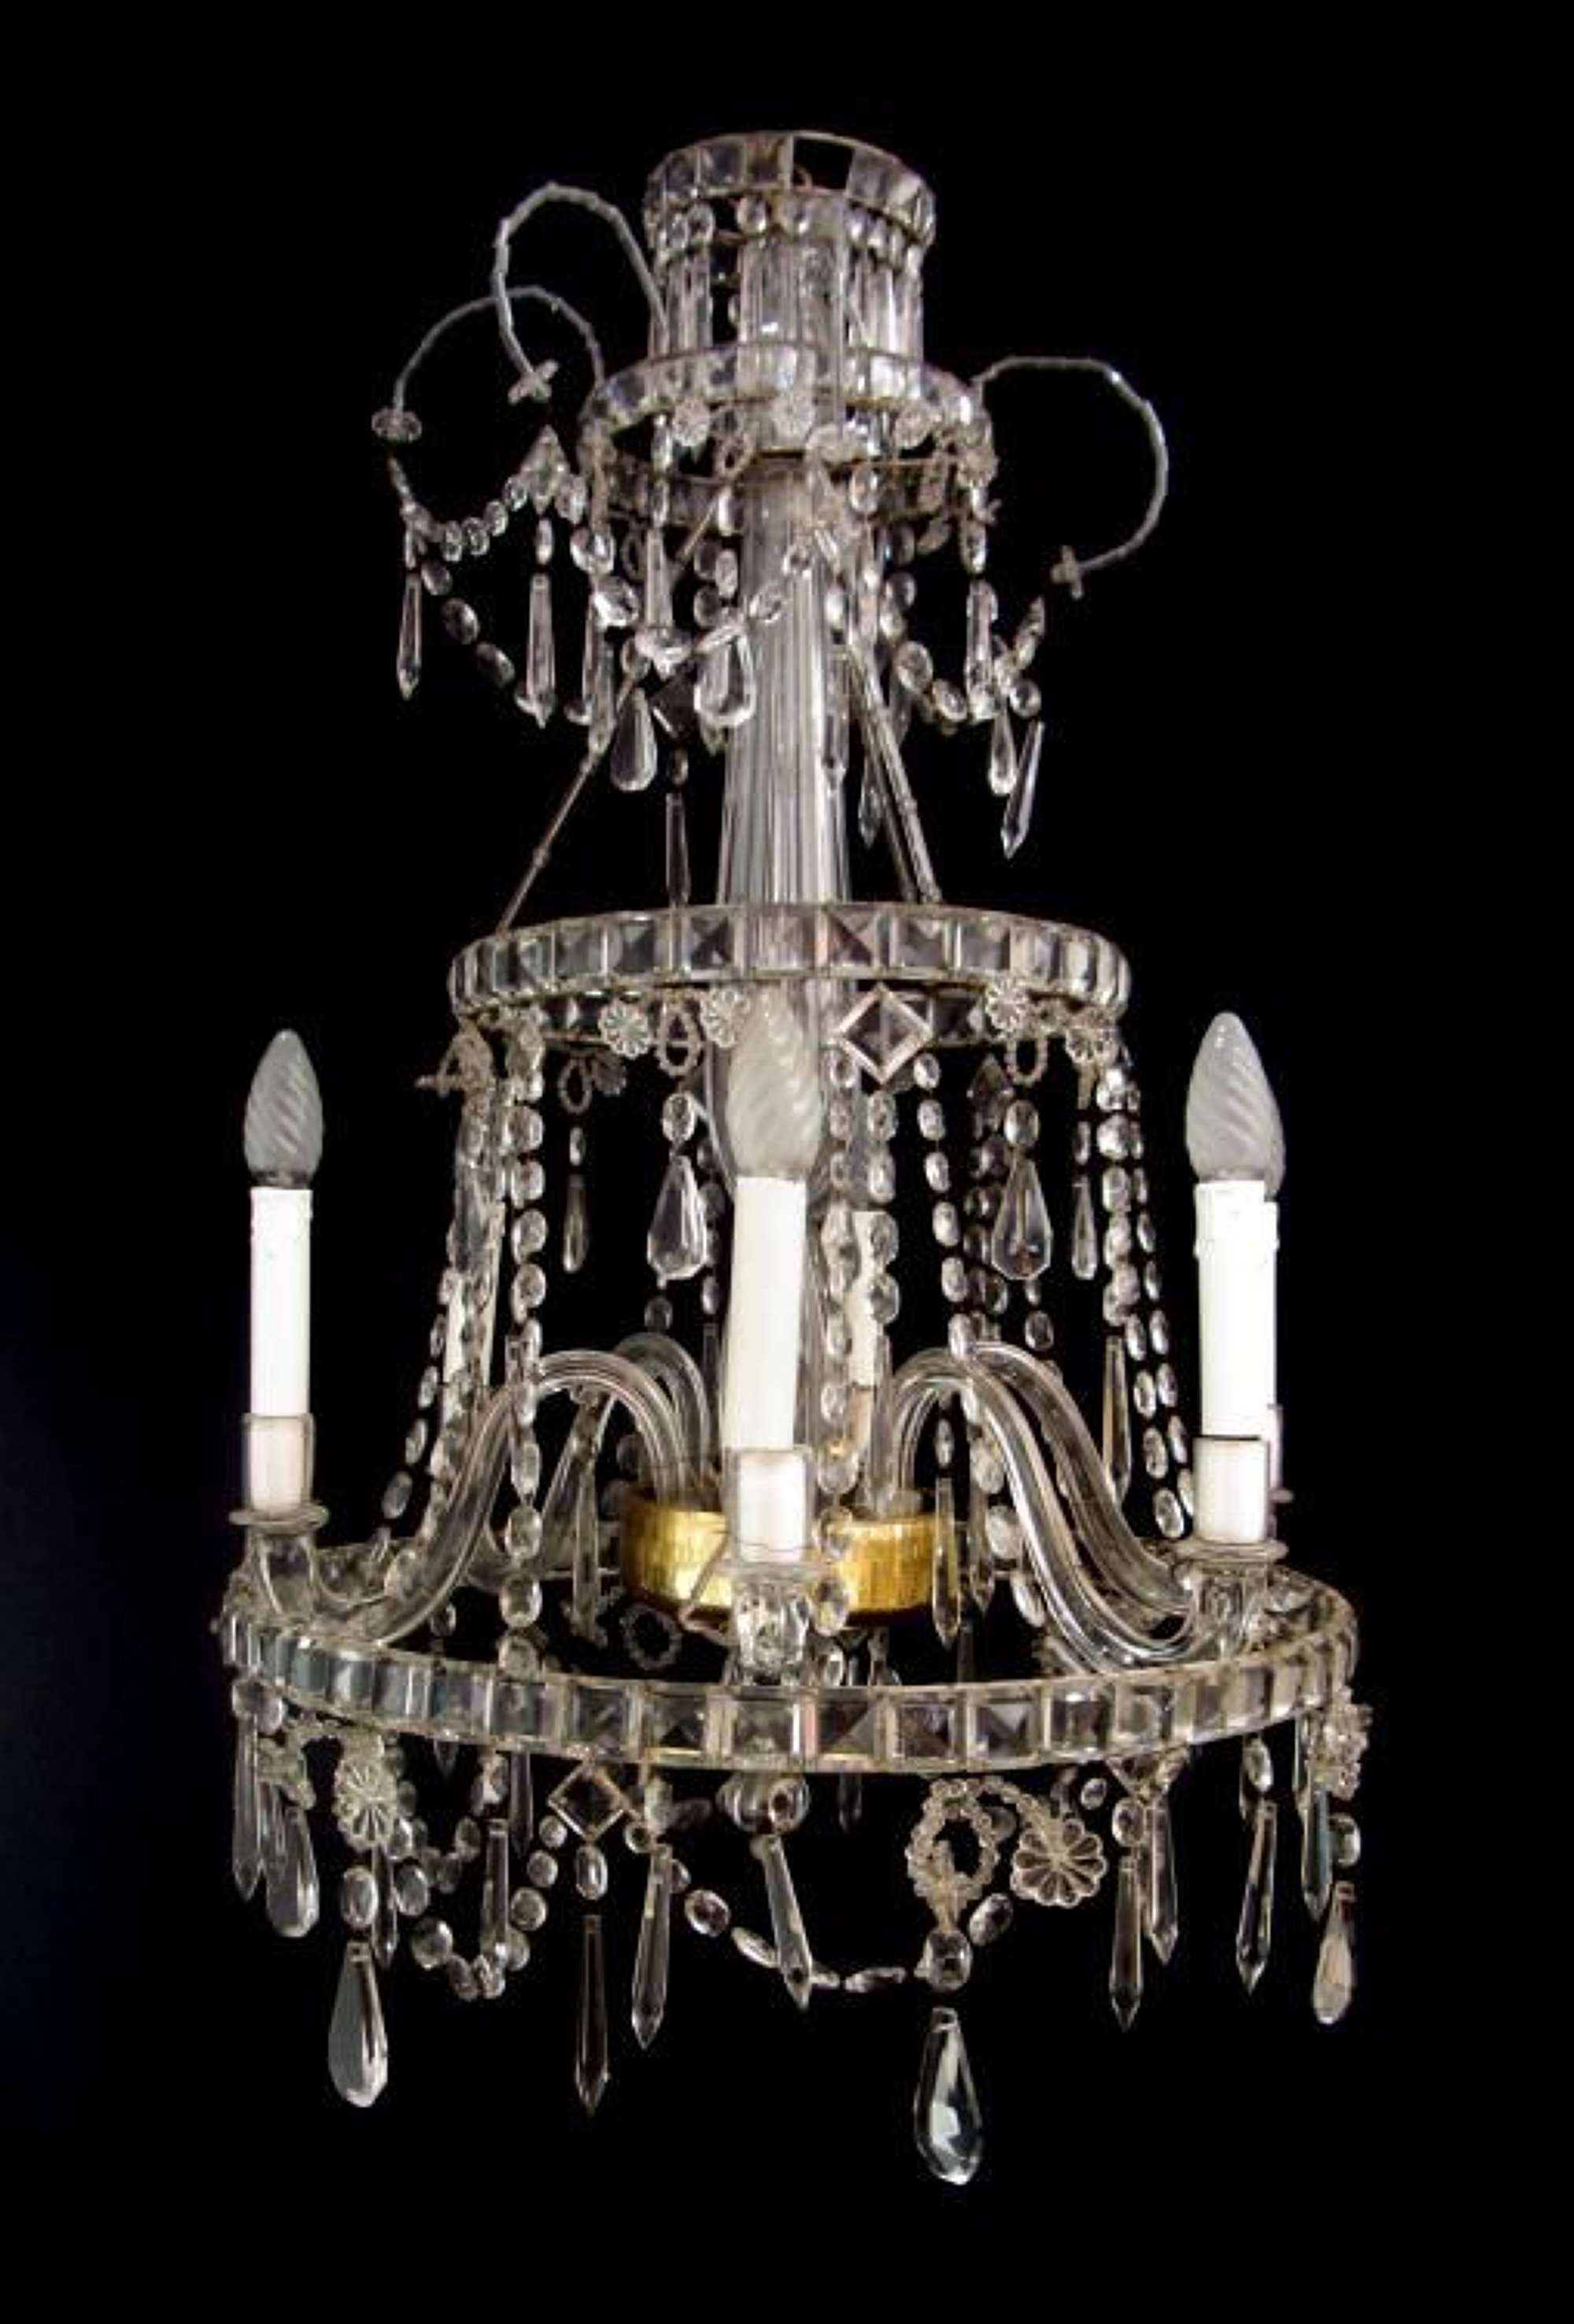 An unusual glass chandelier